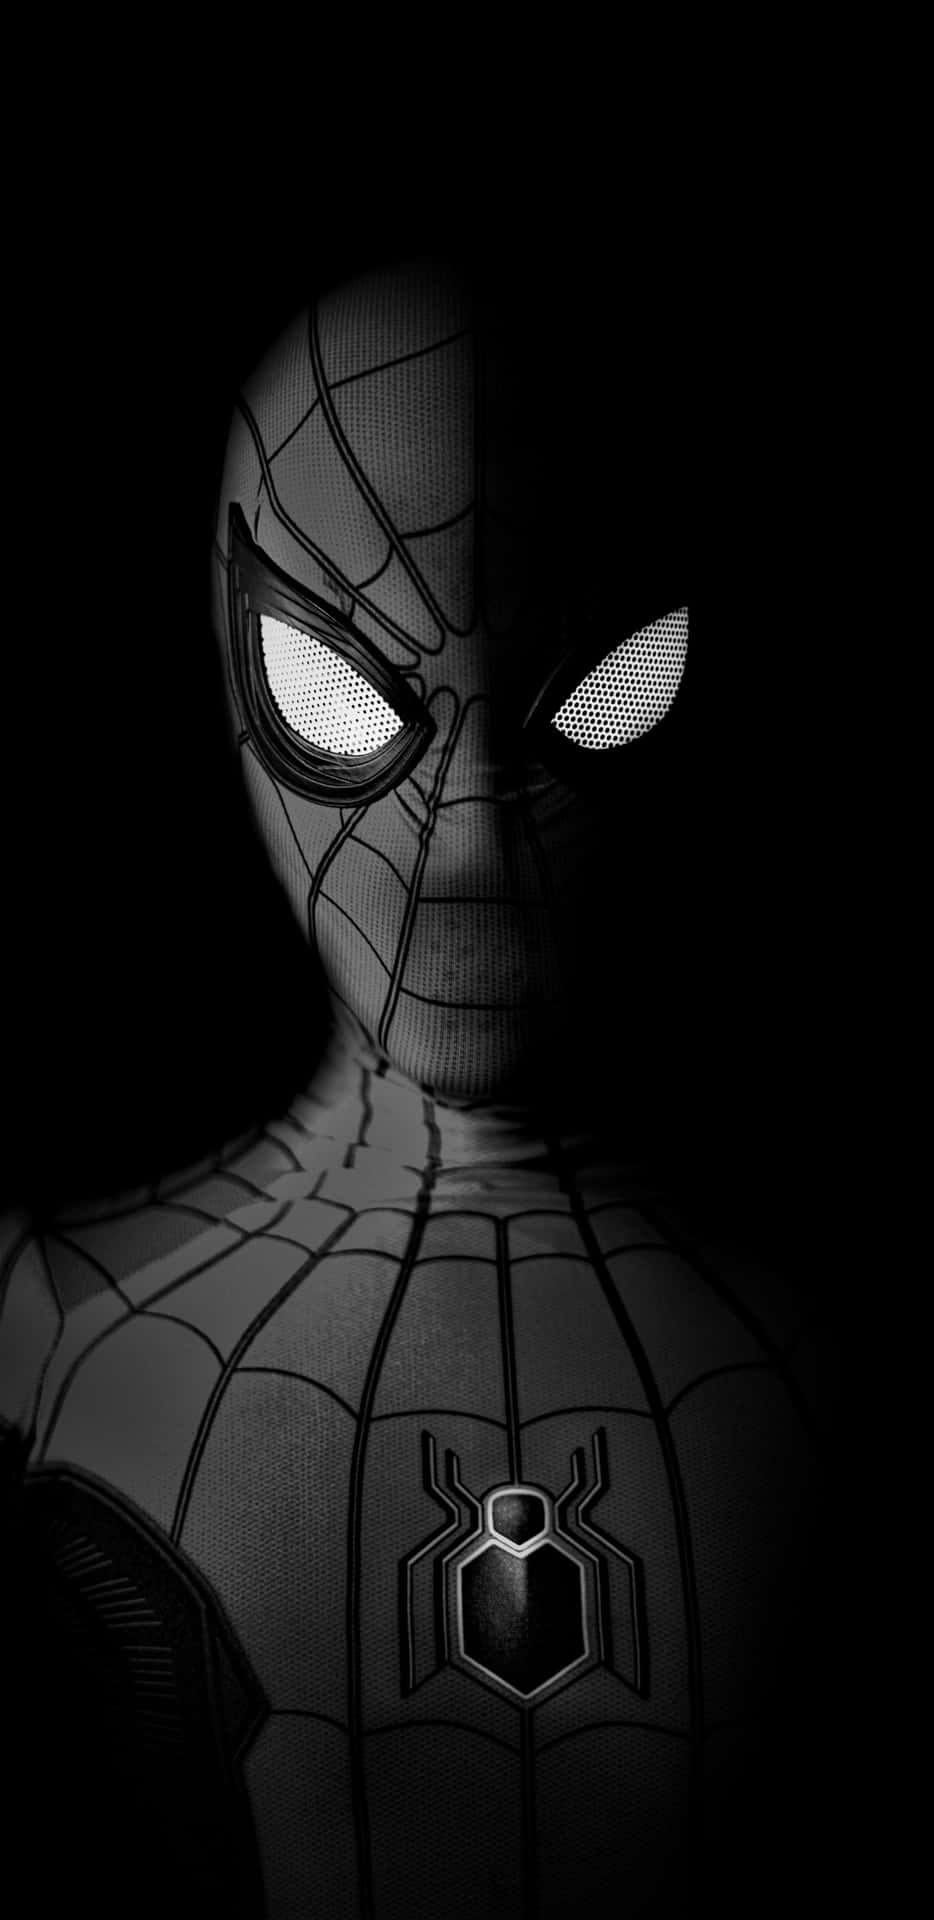 Sfondonero Estetico Per Pixel 3xl Con Immagine Di Spiderman Dai Fumetti Marvel.